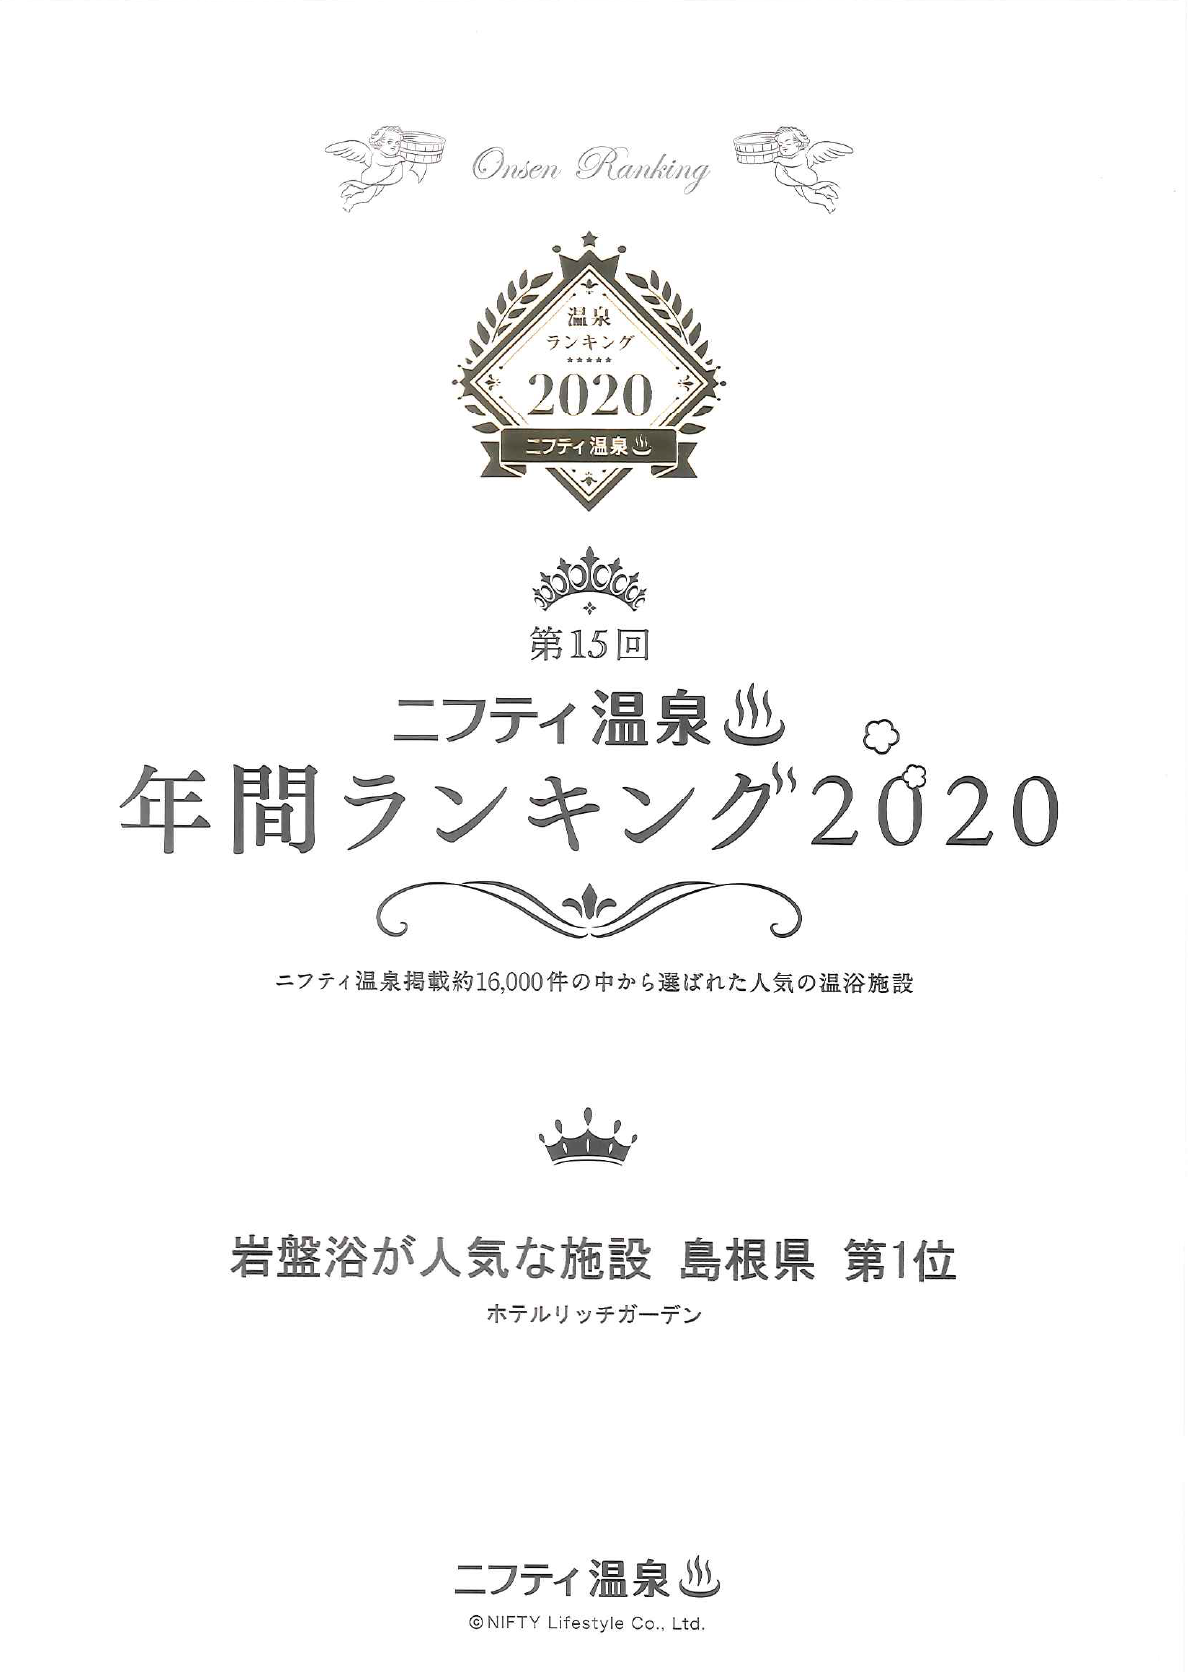 ニフティ温泉2020岩盤浴が人気な施設島根県第一位